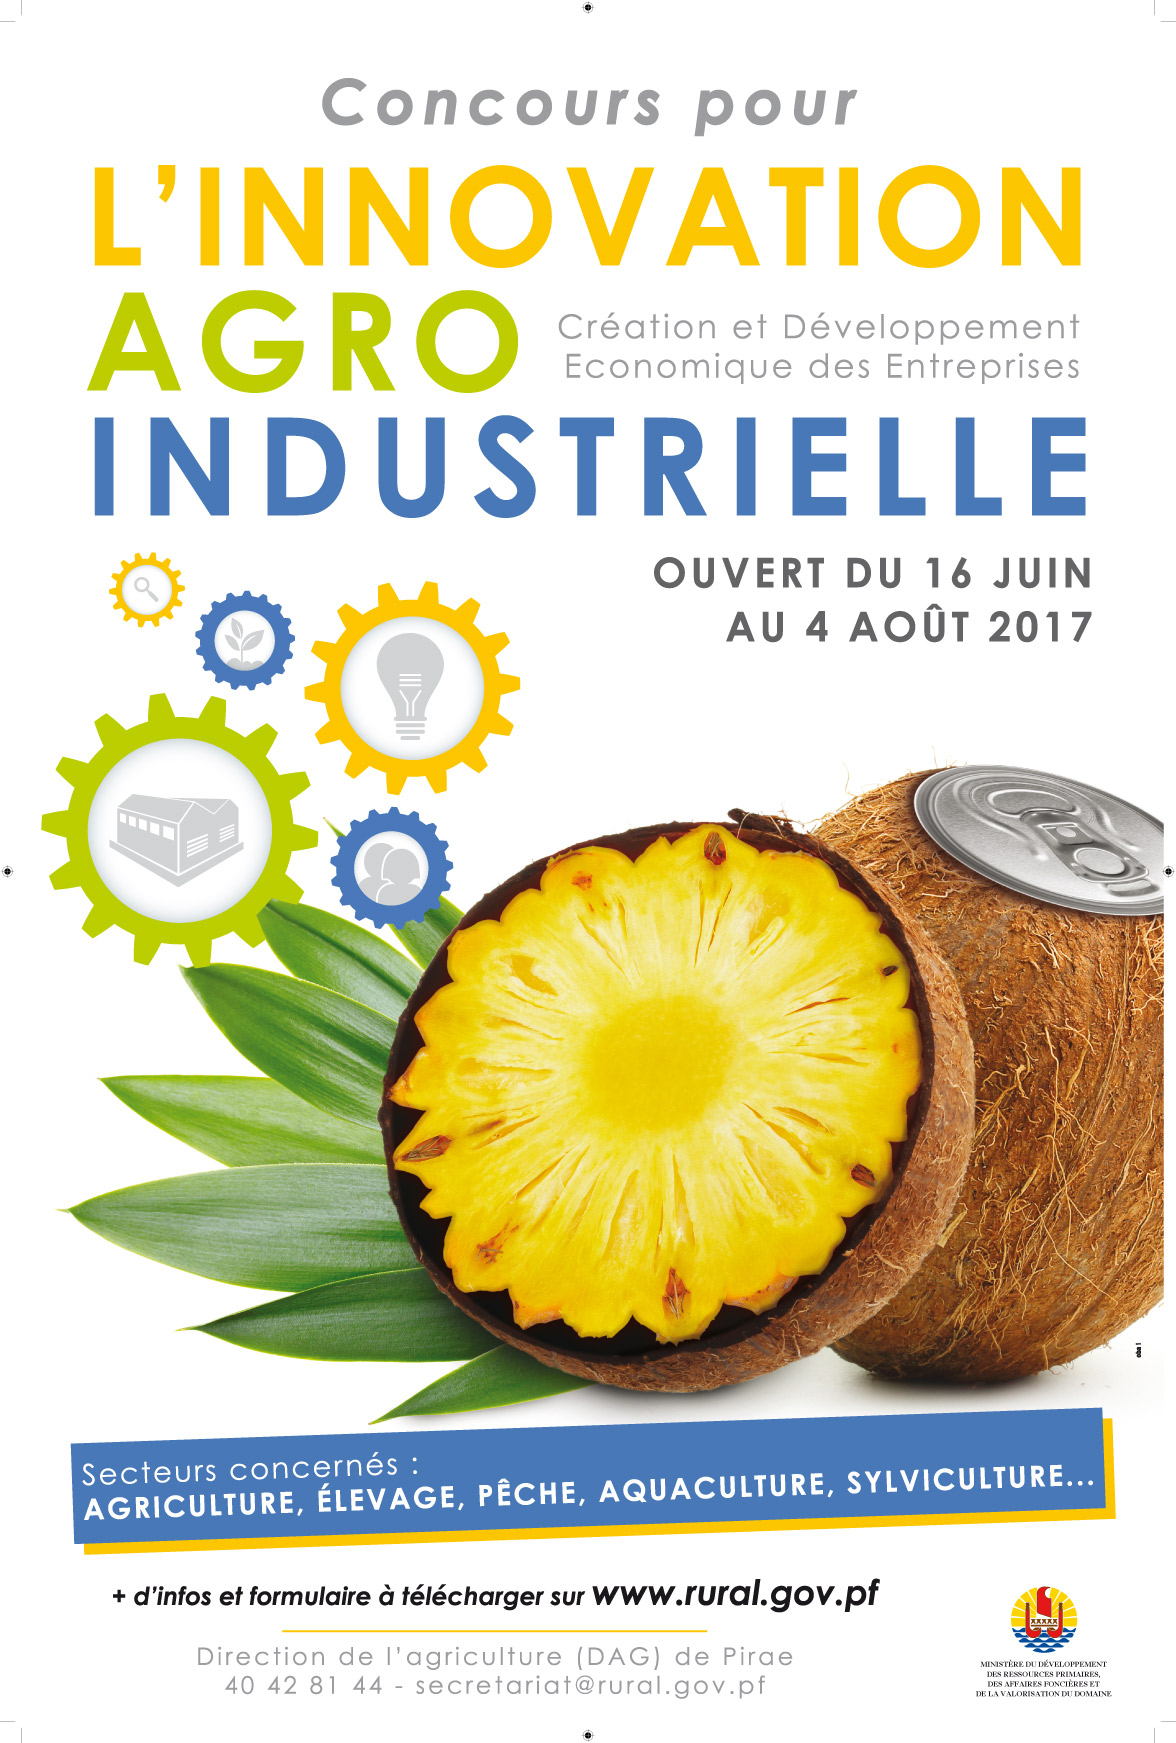 Un concours pour stimuler l’innovation agro-industrielle